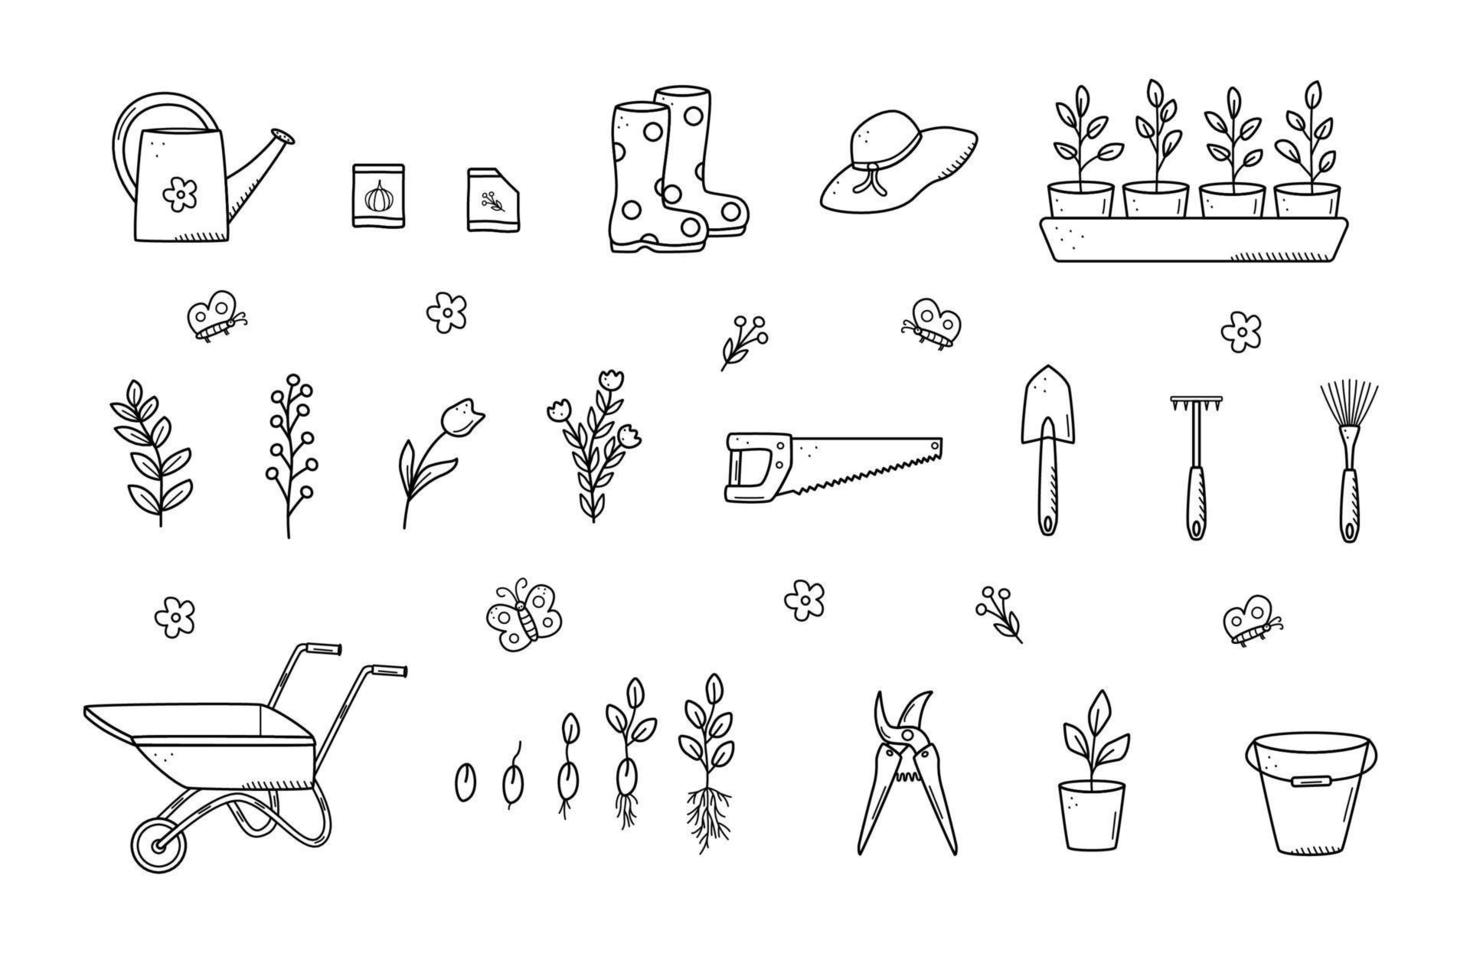 Gartengeräte und Pflanzen, eine Reihe von Vektor-Doodle-Illustrationen. Konzeptgartenarbeit, ein Sommerhobby. vektor